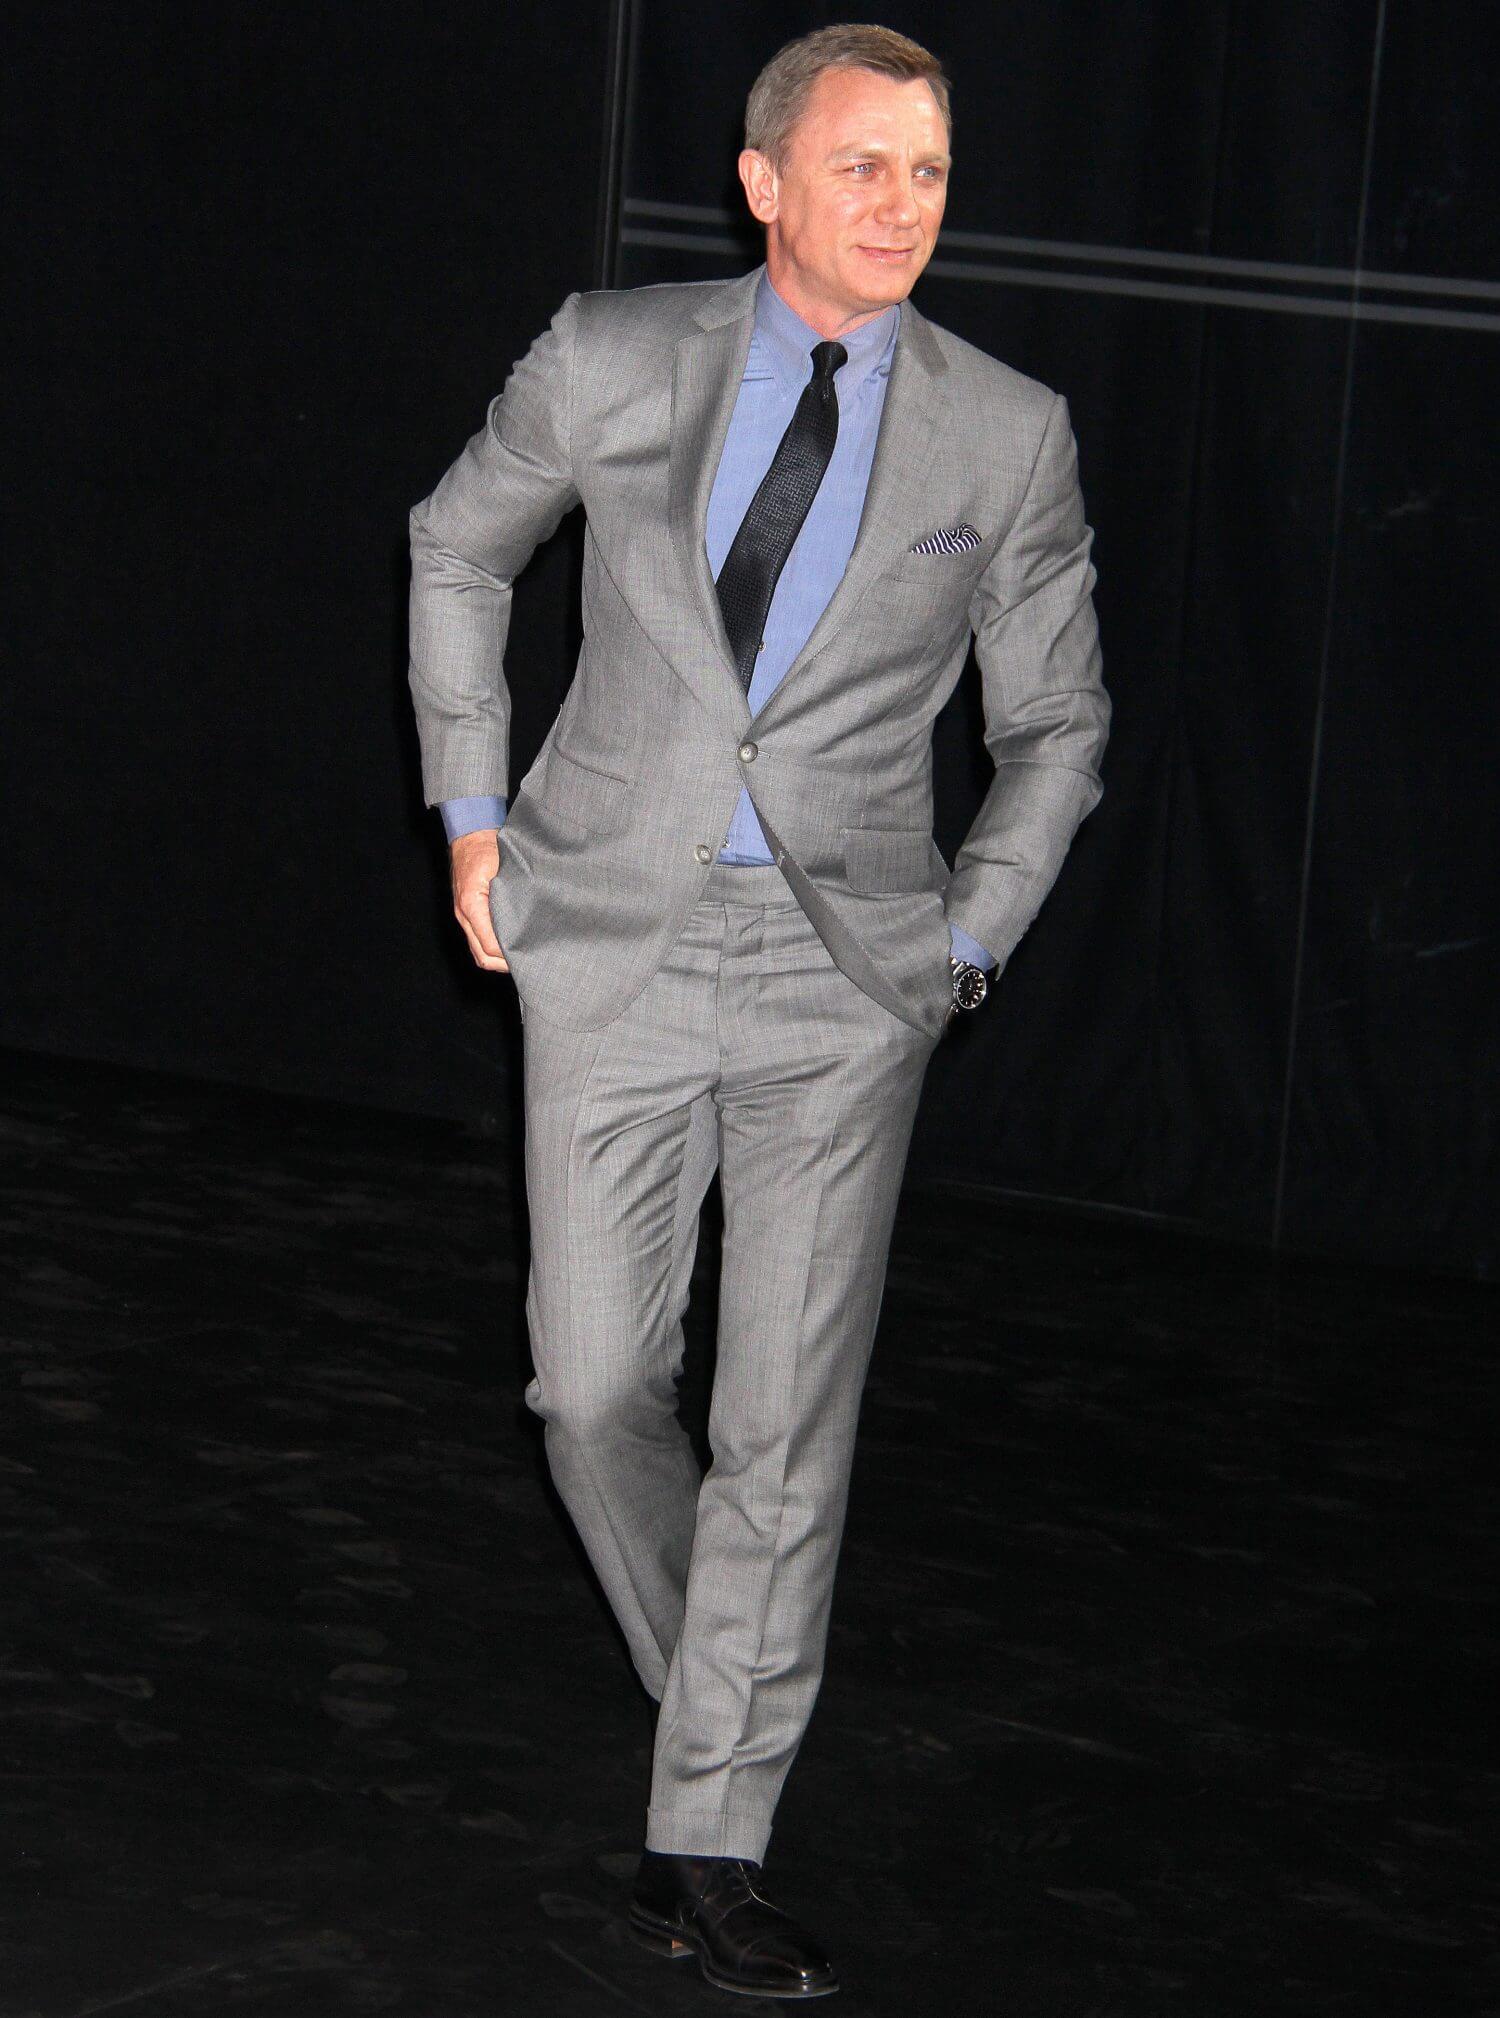 ダニエル クレイグのスーツスタイルの魅力を解剖 007 ジェームズ ボンド メンズファッションメディア Otokomae 男前研究所